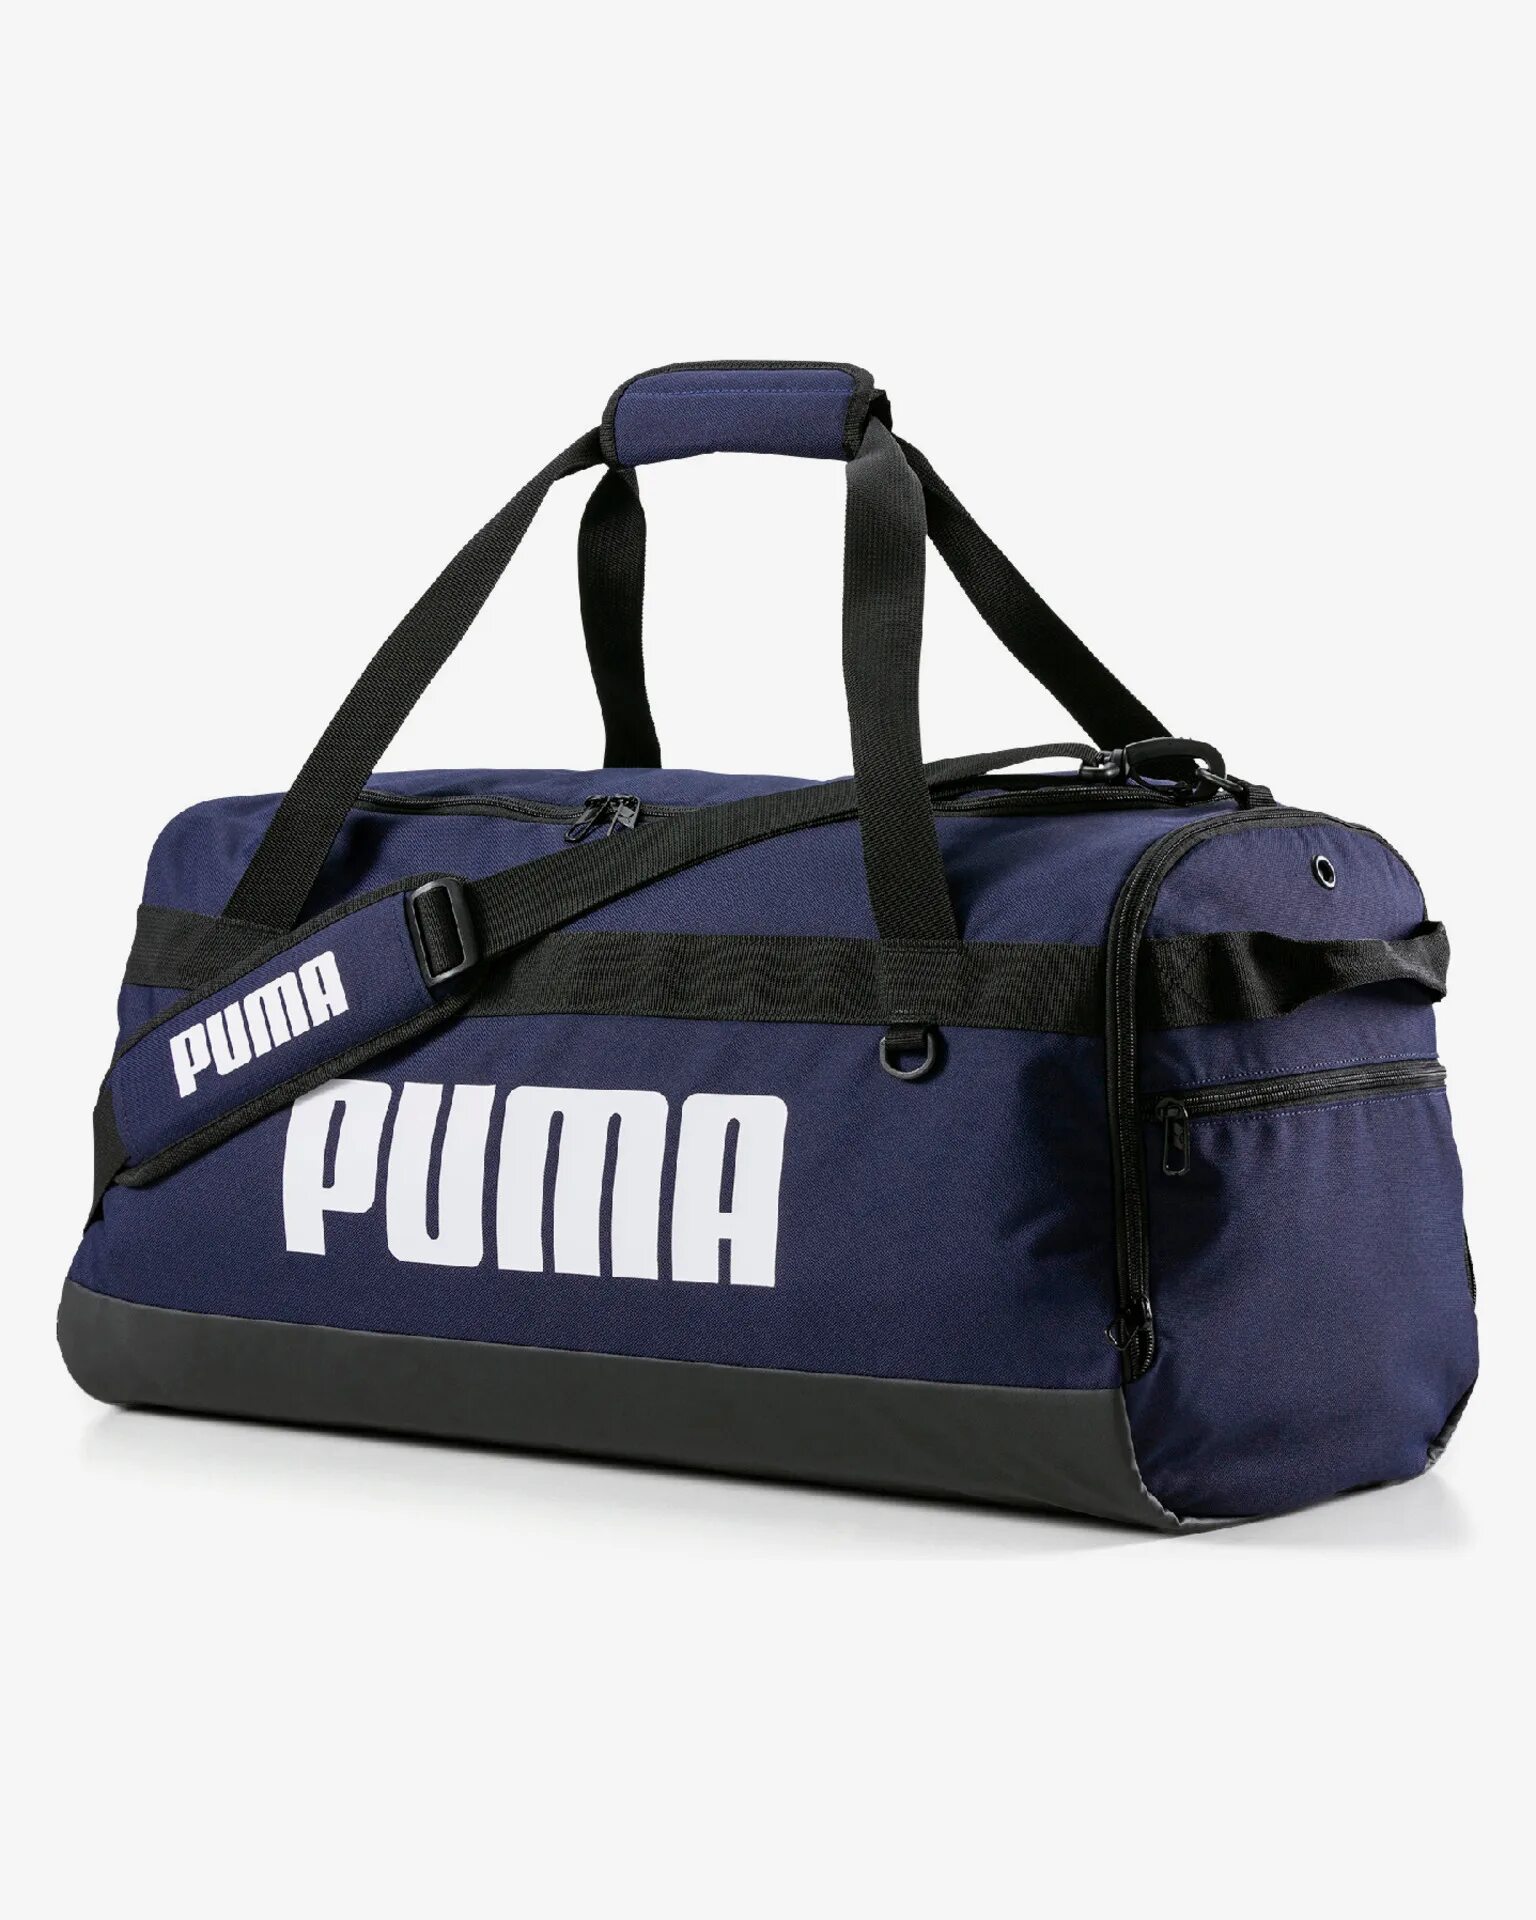 Сумка Puma Challenger Duffel Bag m. Puma Challenger Duffel. Puma Challenger Duffel Bag s. Сумка спортивная Puma Challenger duffelbag XS. Спортивные сумки фото